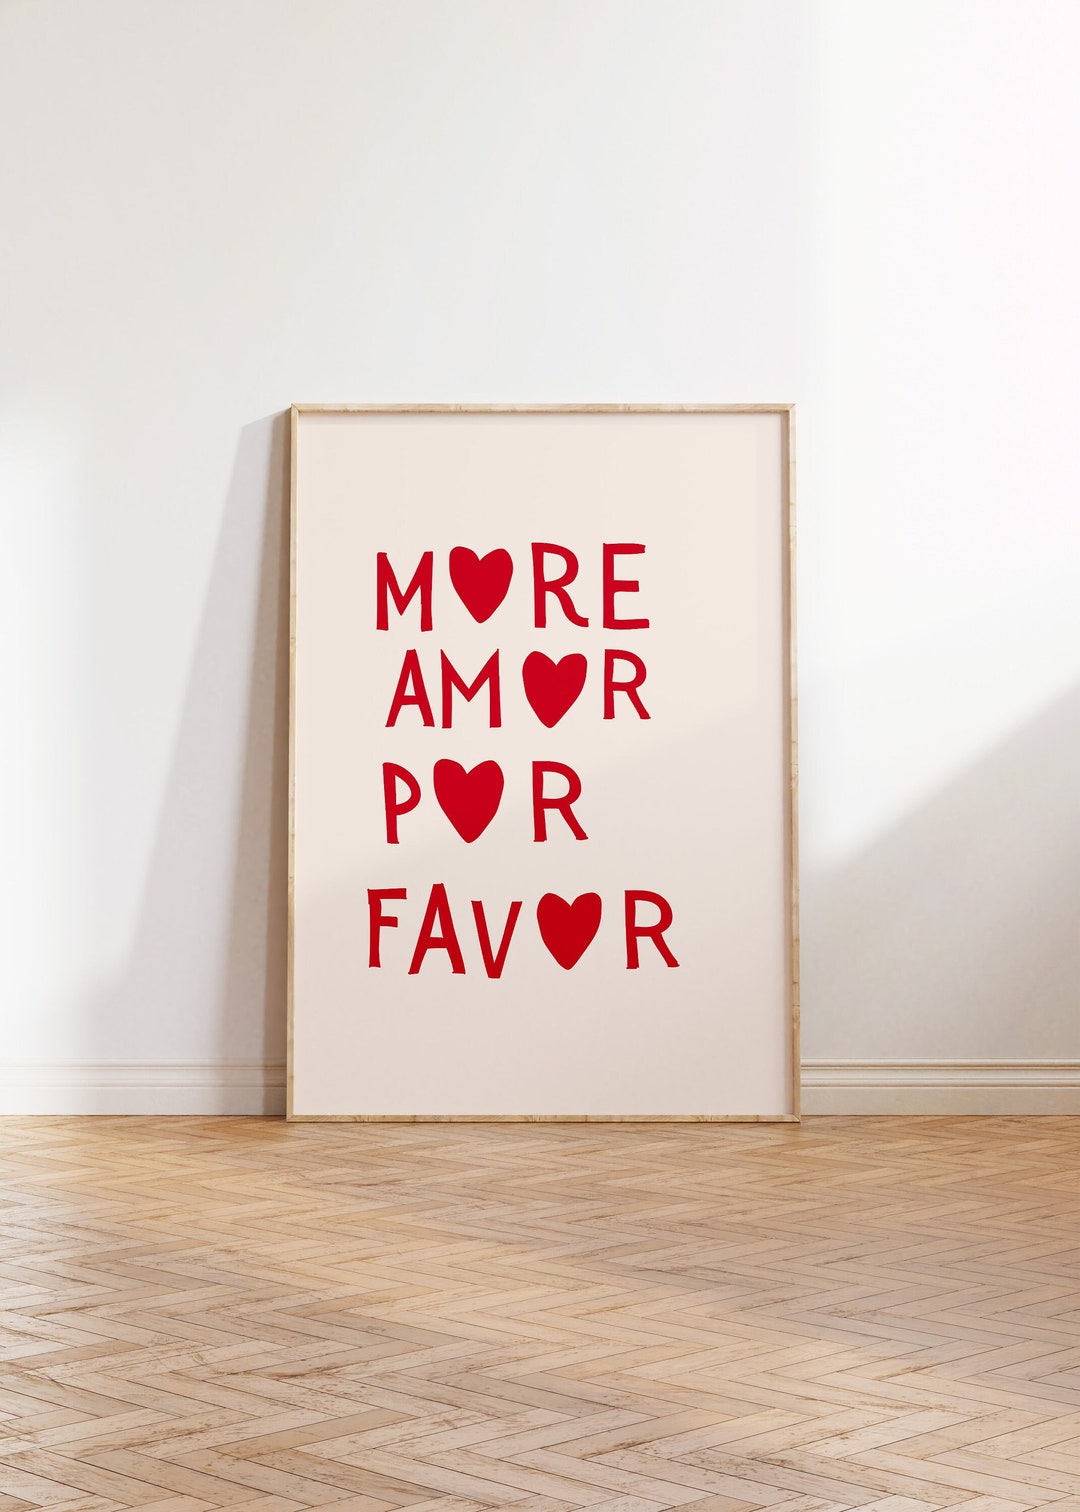 More Amor Por Favor Print Minimalist Heart Poster Aesthetic - Etsy